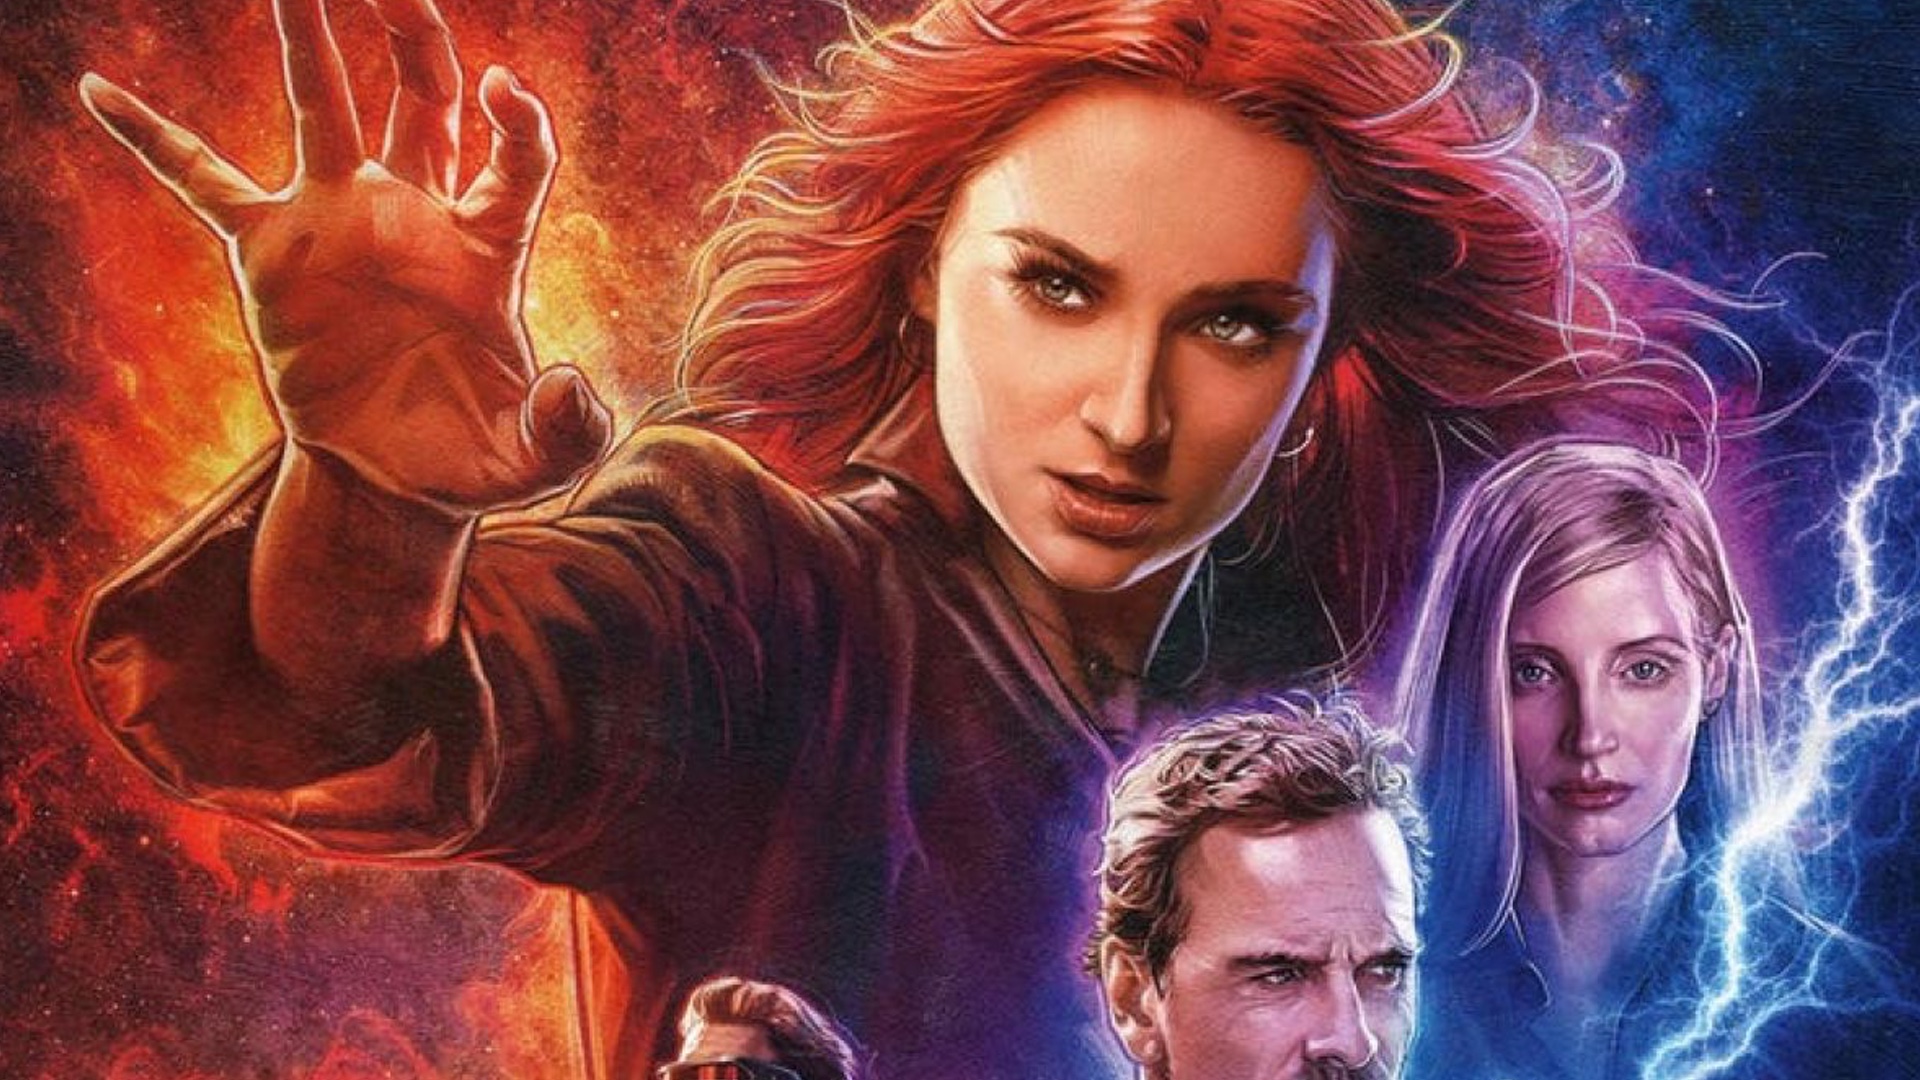 Dark Phoenix Marvel Movie Poster Wall Art Maxi 2019 Prints New Film Cinema-1672